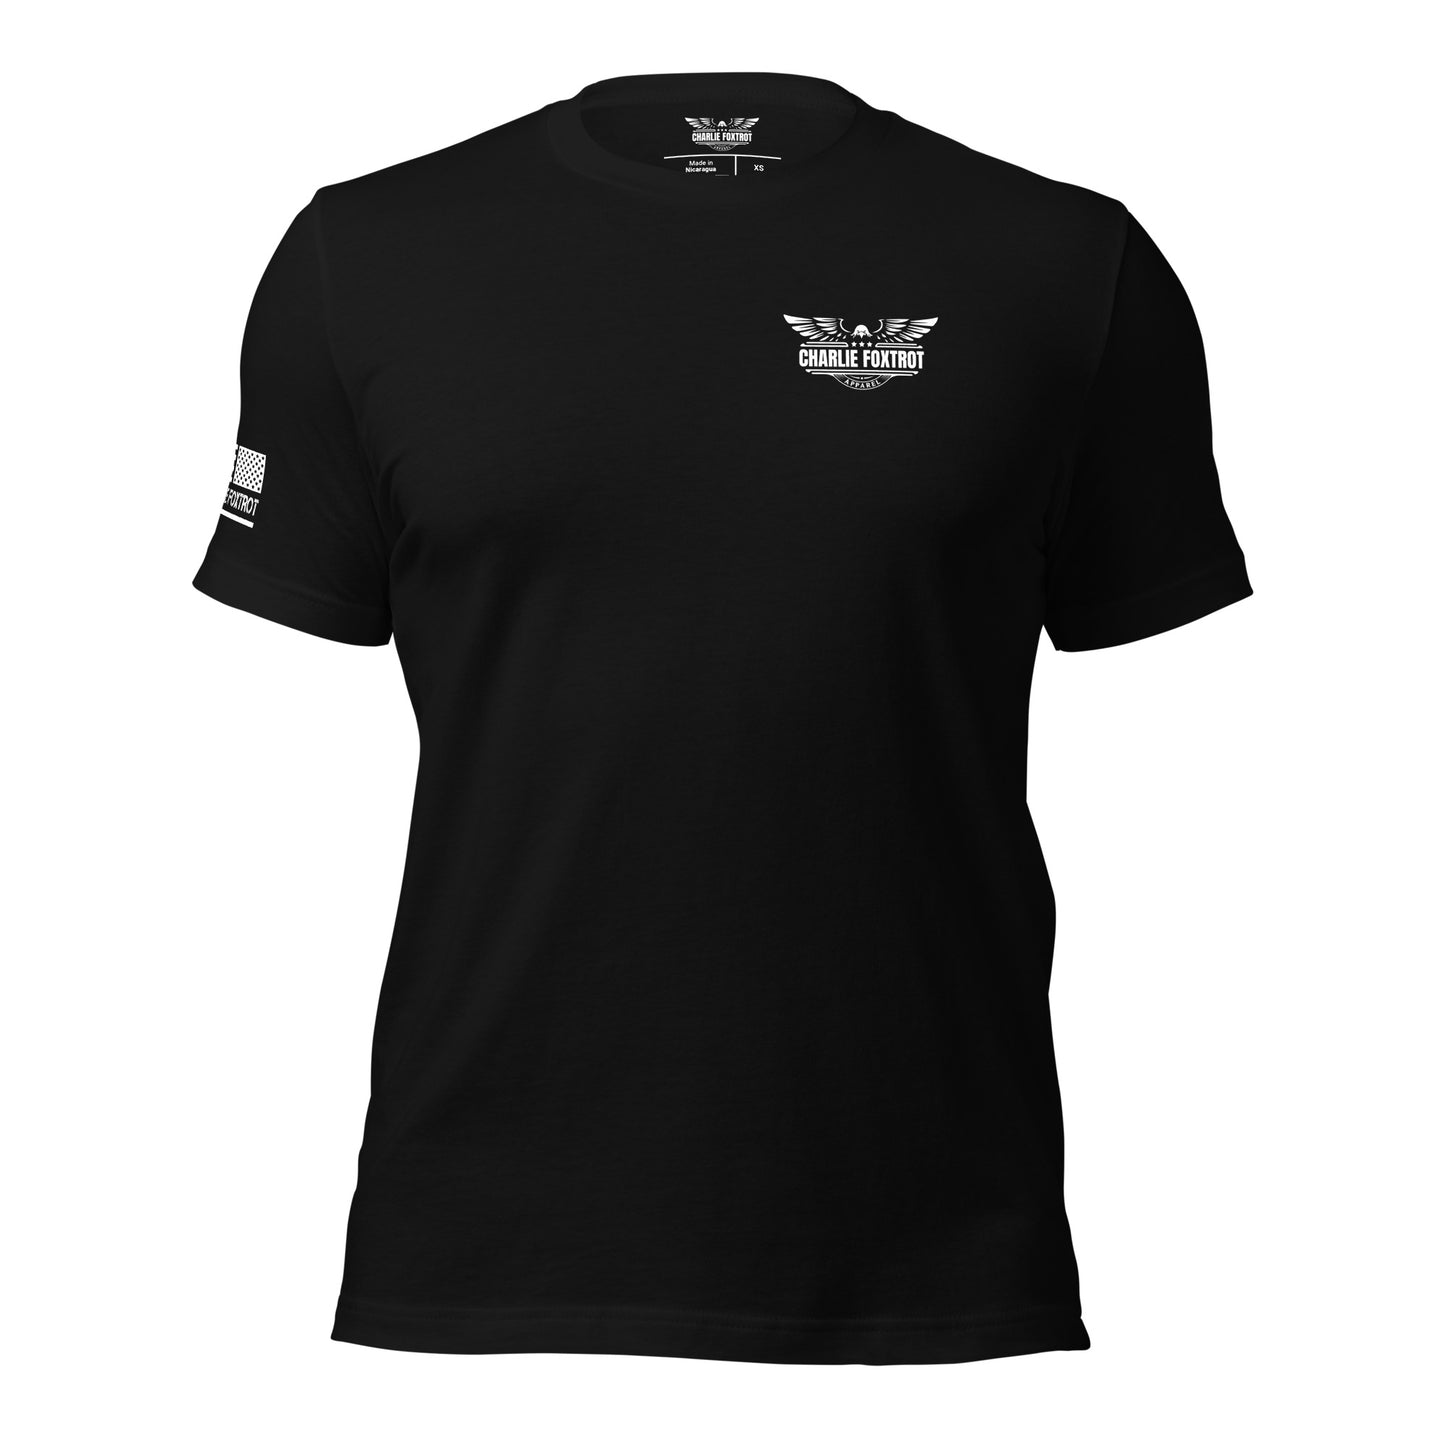 United States Army Unisex T-shirt